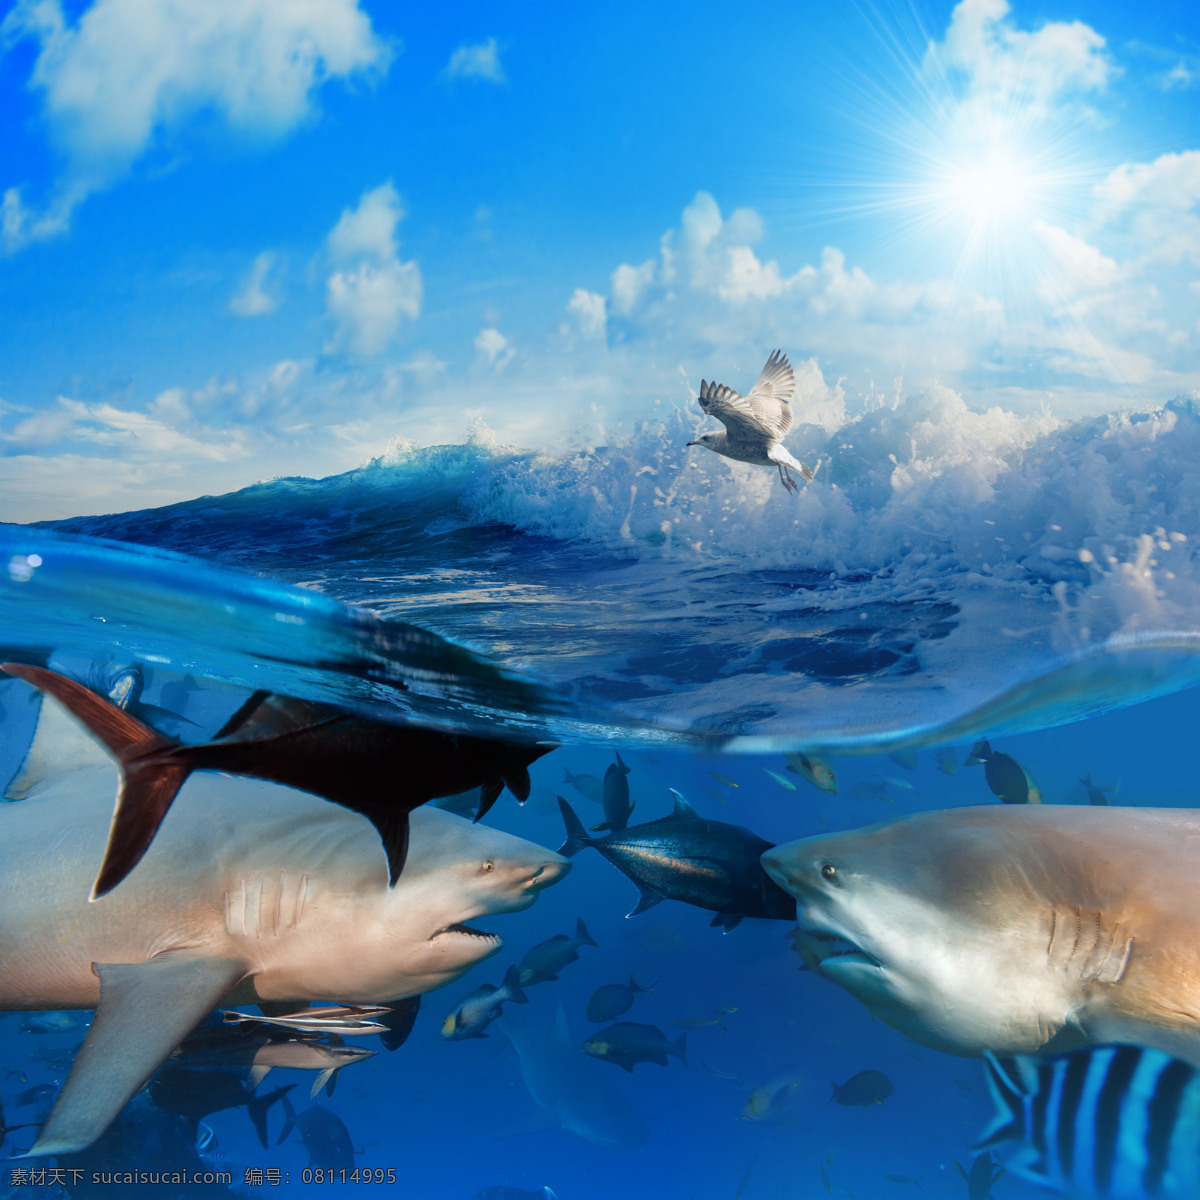 大海 里 动物 鱼 鲨鱼 海鸥 天空 白云 阳光 浪花 海水 自然风光 景观 景区 旅游 自然风景 自然景观 蓝色